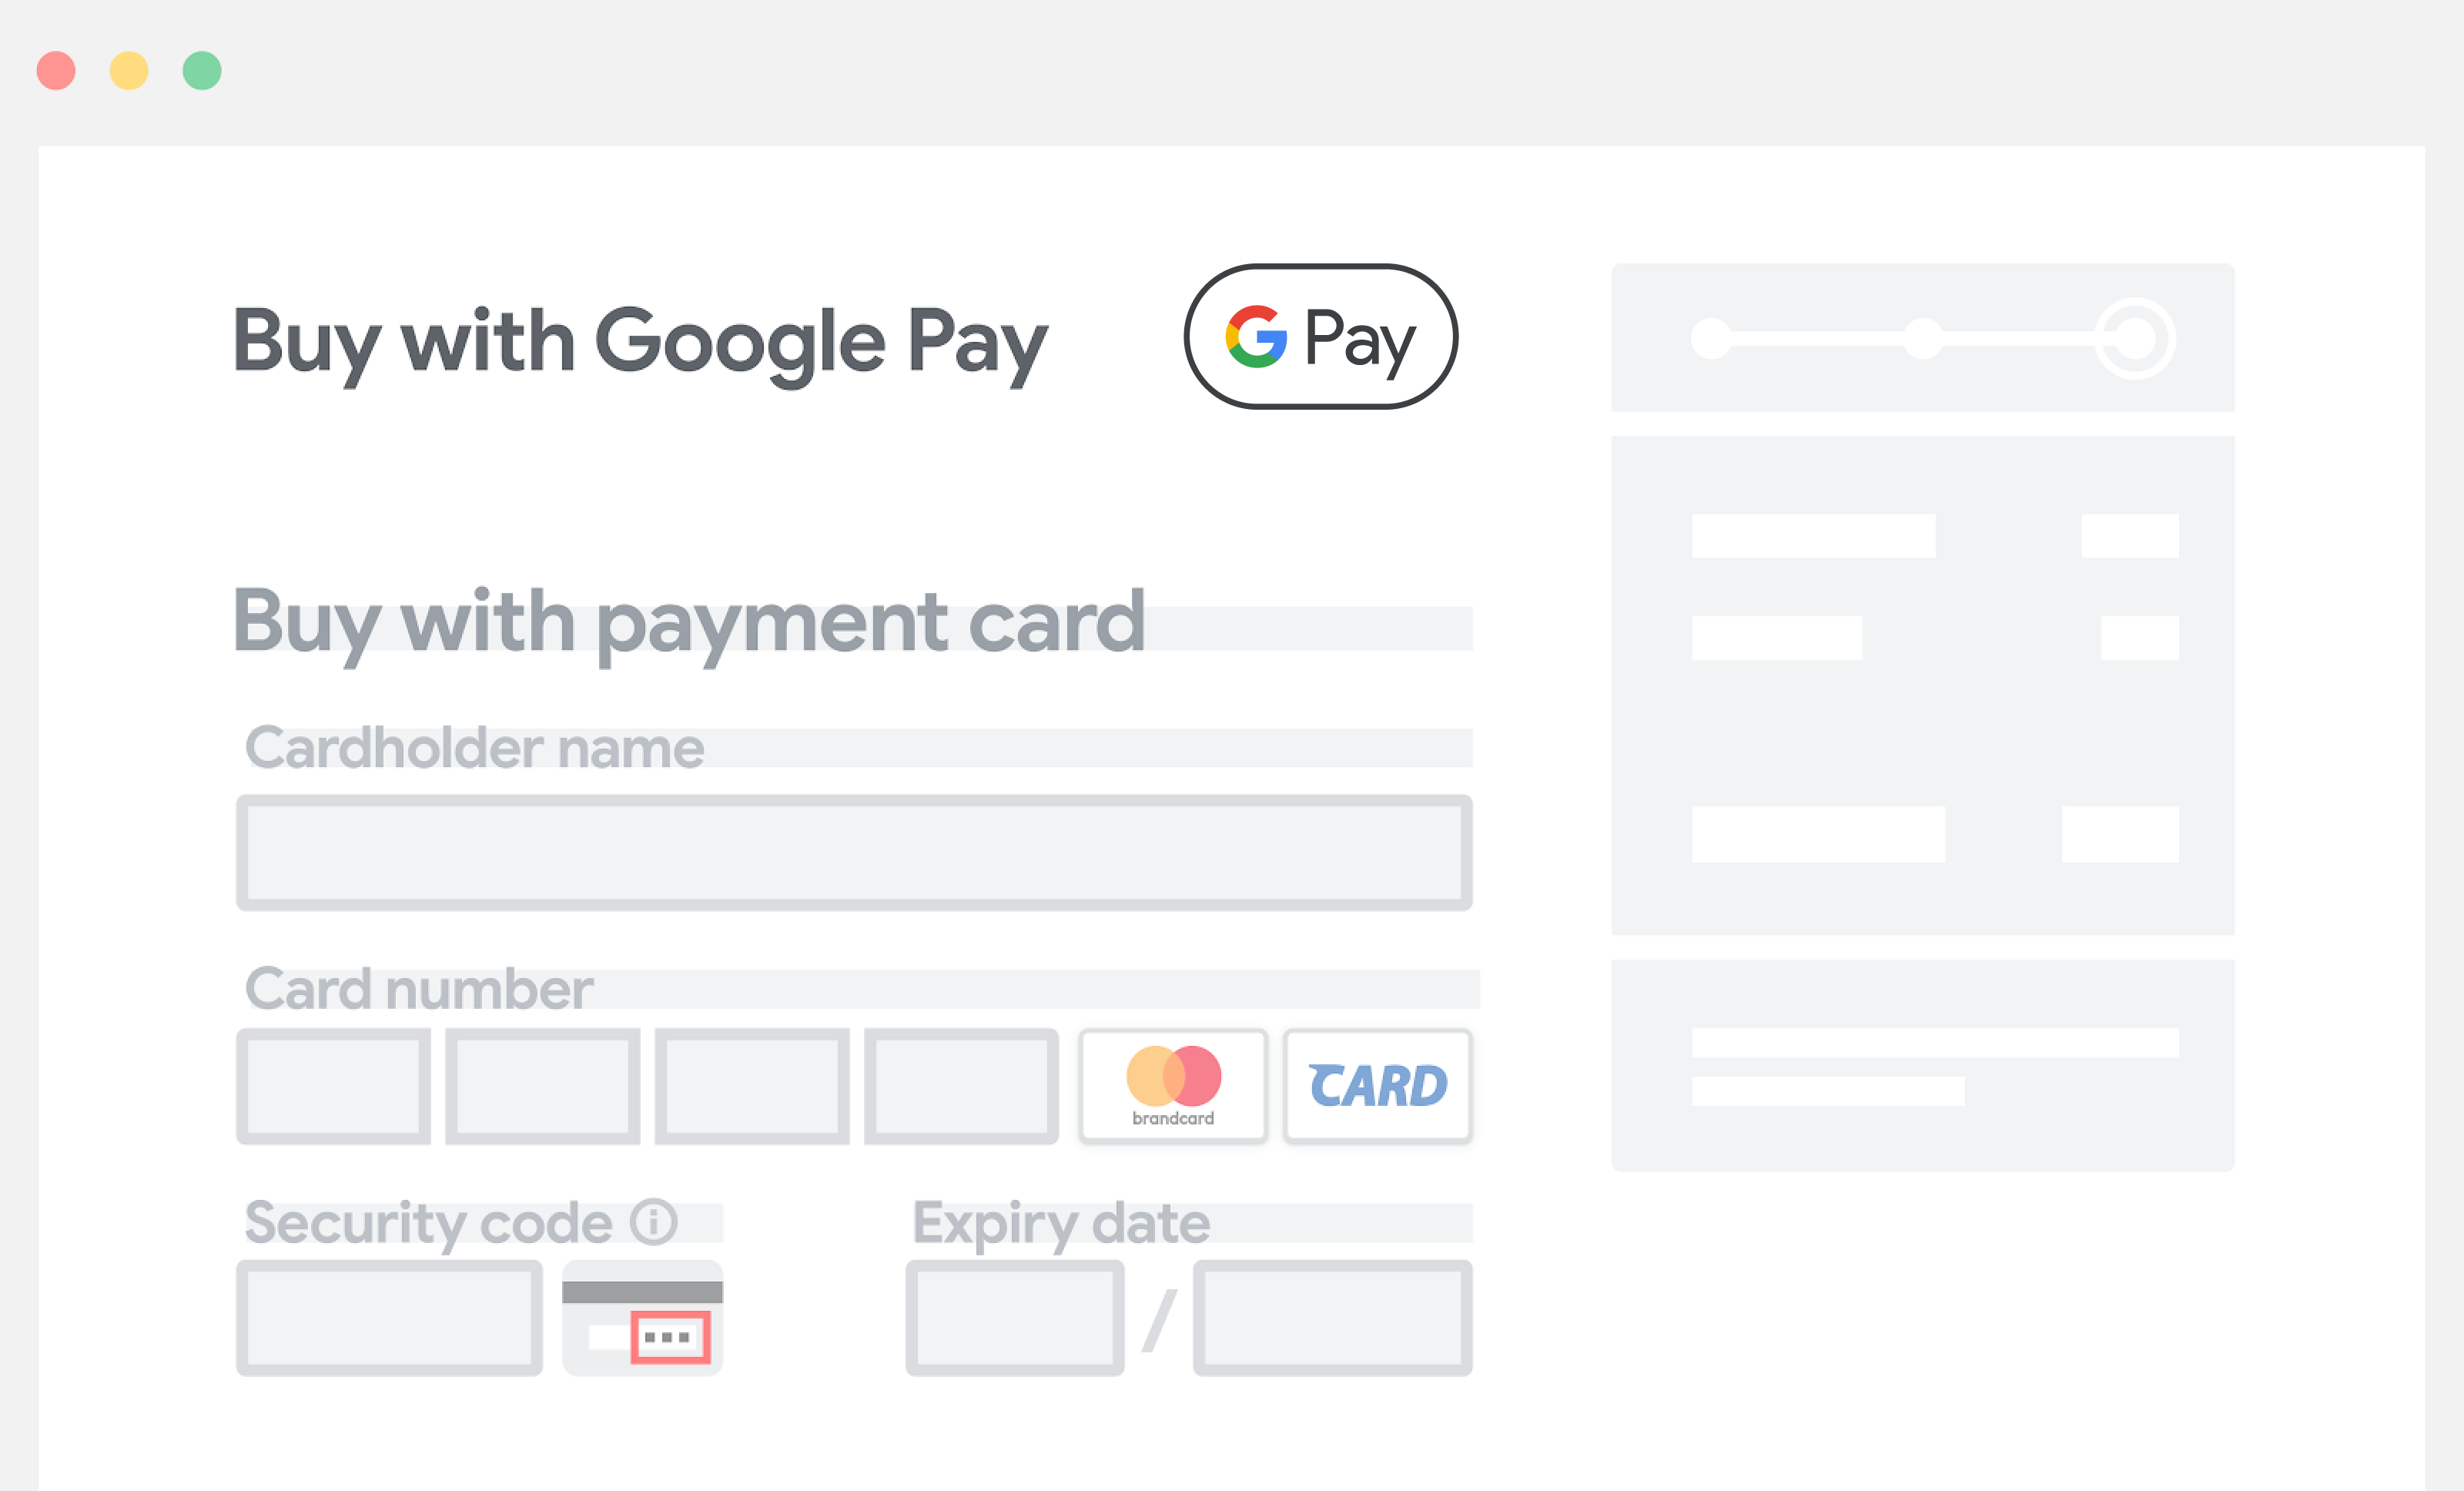 將 Google Pay 放在付款資訊手動輸入欄位上方。